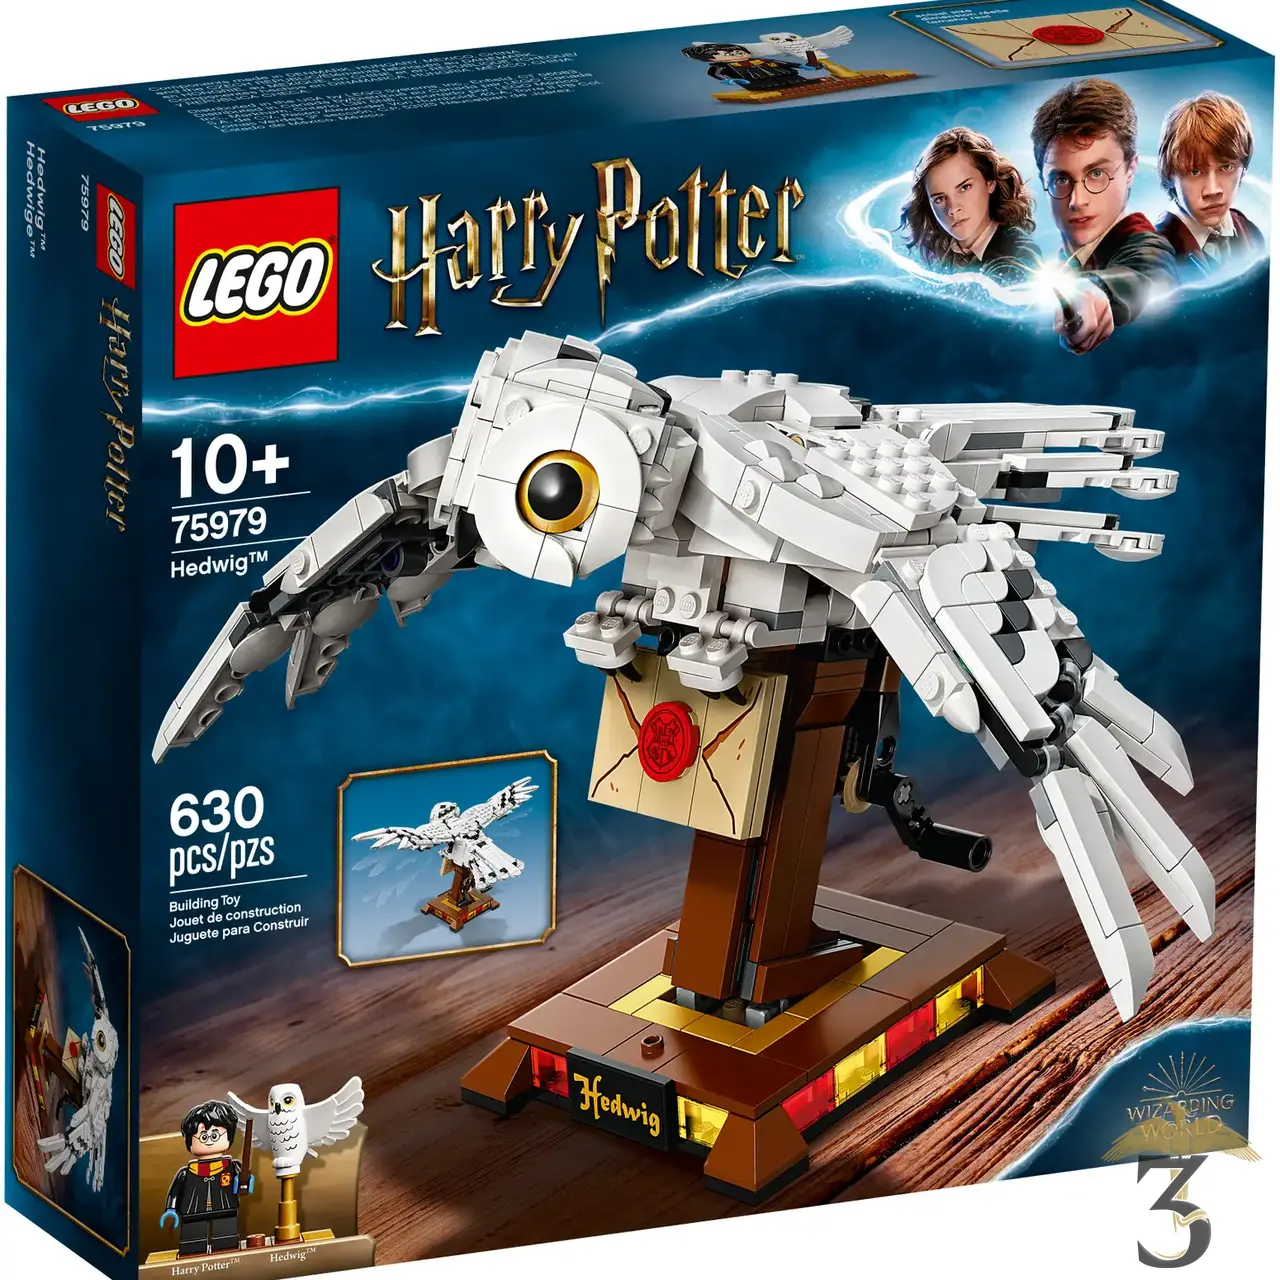 Puzzle Harry Potter Vif d'Or 550 pièces sous licence officielle